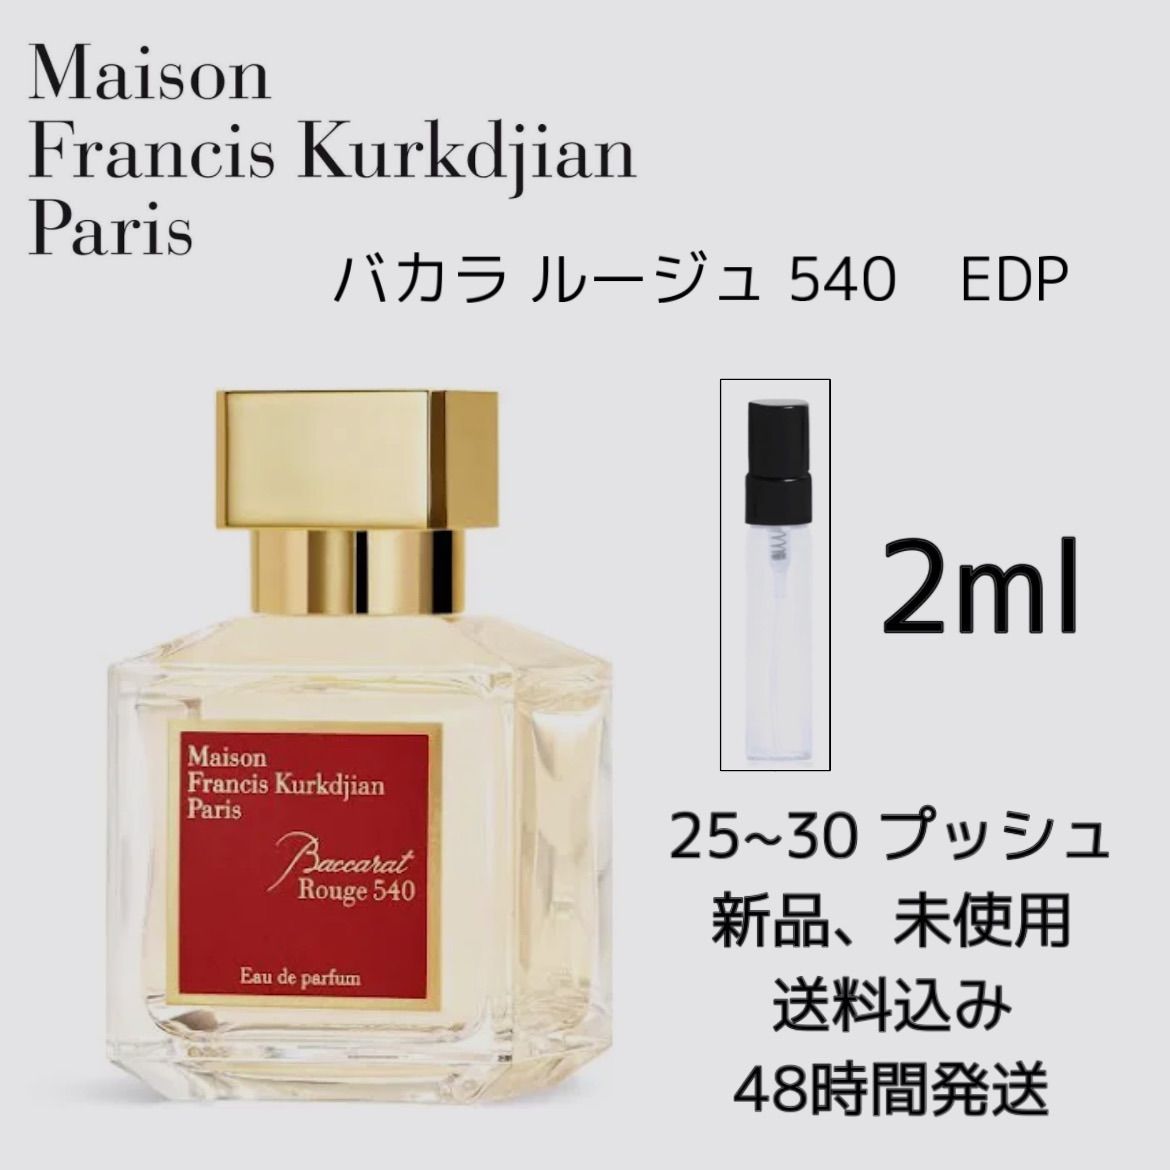 新品 お試し 香水 Maison Francis Kurkdjian Baccarat メゾン